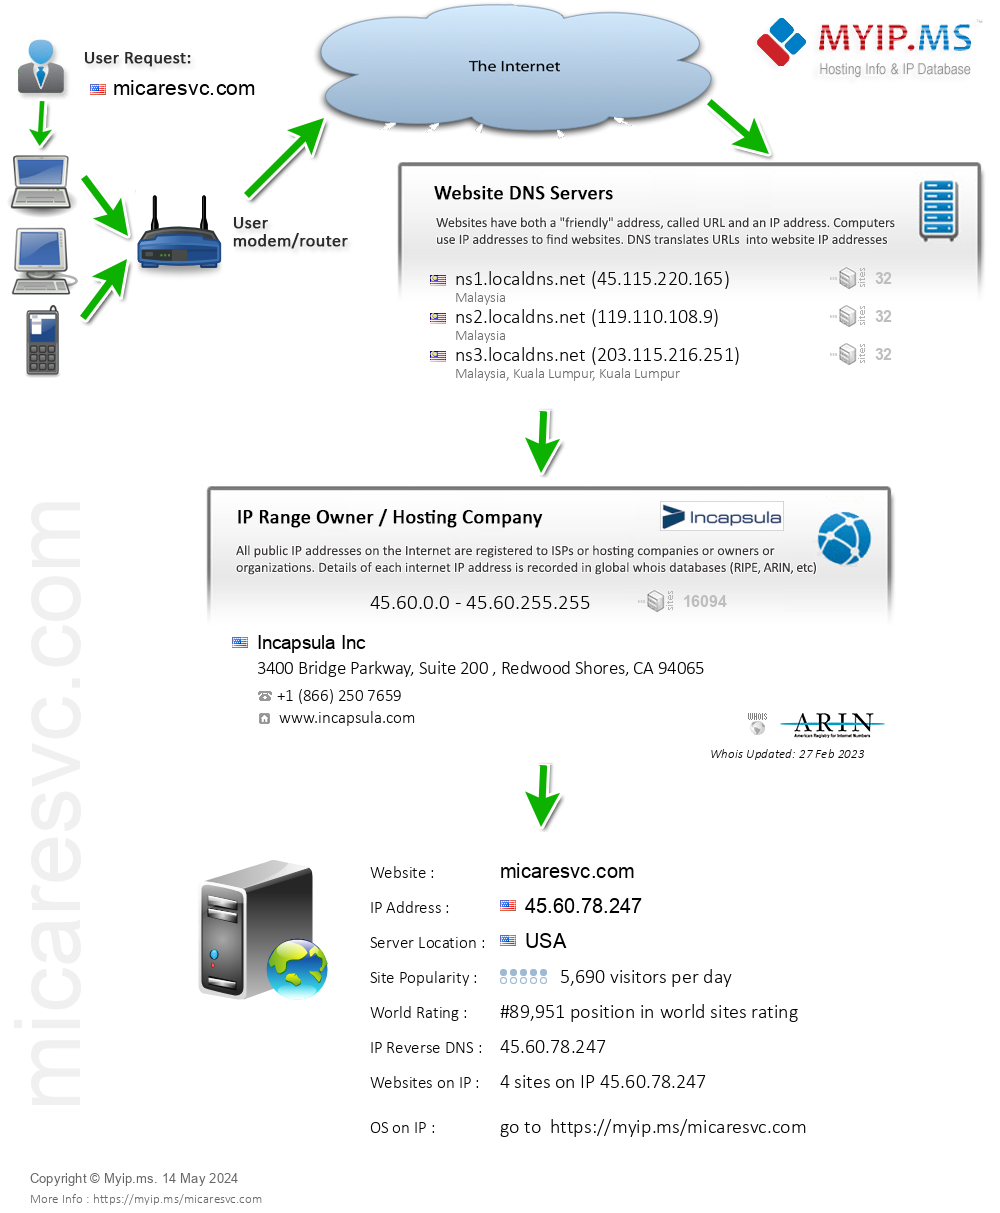 Micaresvc.com - Website Hosting Visual IP Diagram